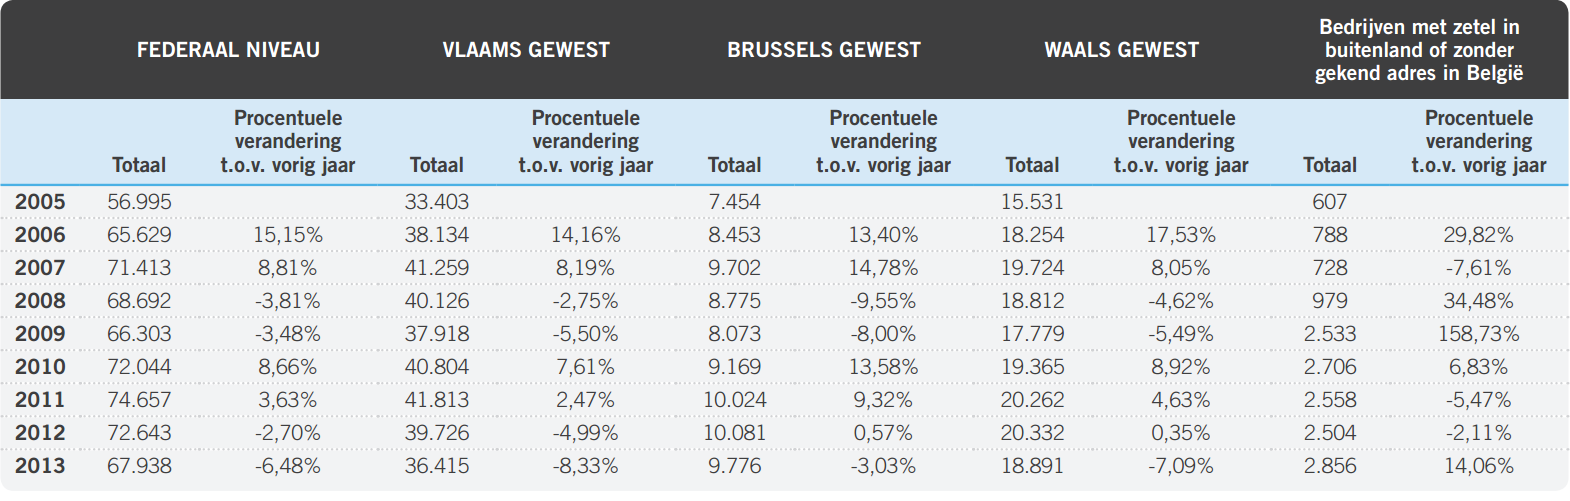 53,6% in 2013, terwijl het aandeel van Brusselse starters vooral de laatste drie jaar stijgt. Wallonië vertegenwoordigt over de periode 2005-2013 een aandeel van telkens 27% à 28%.